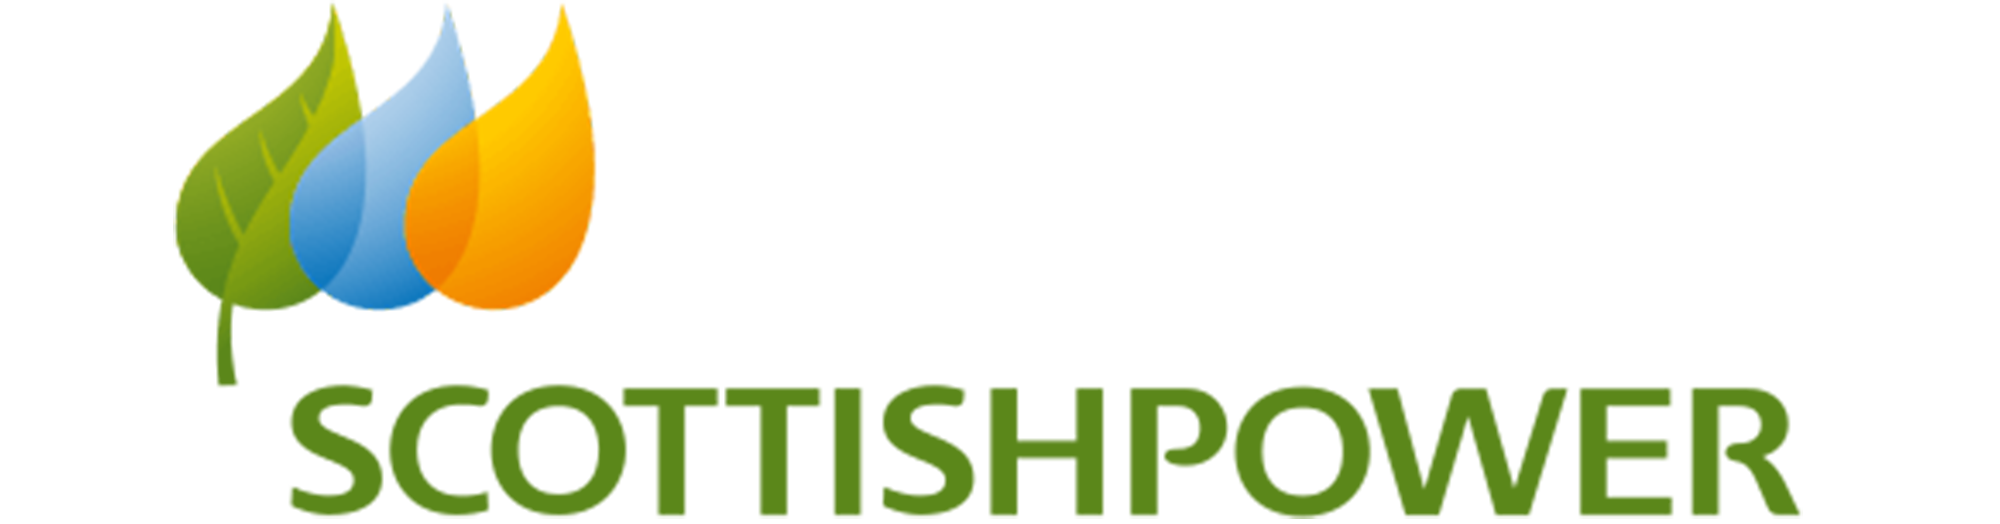 scottishpower-logo